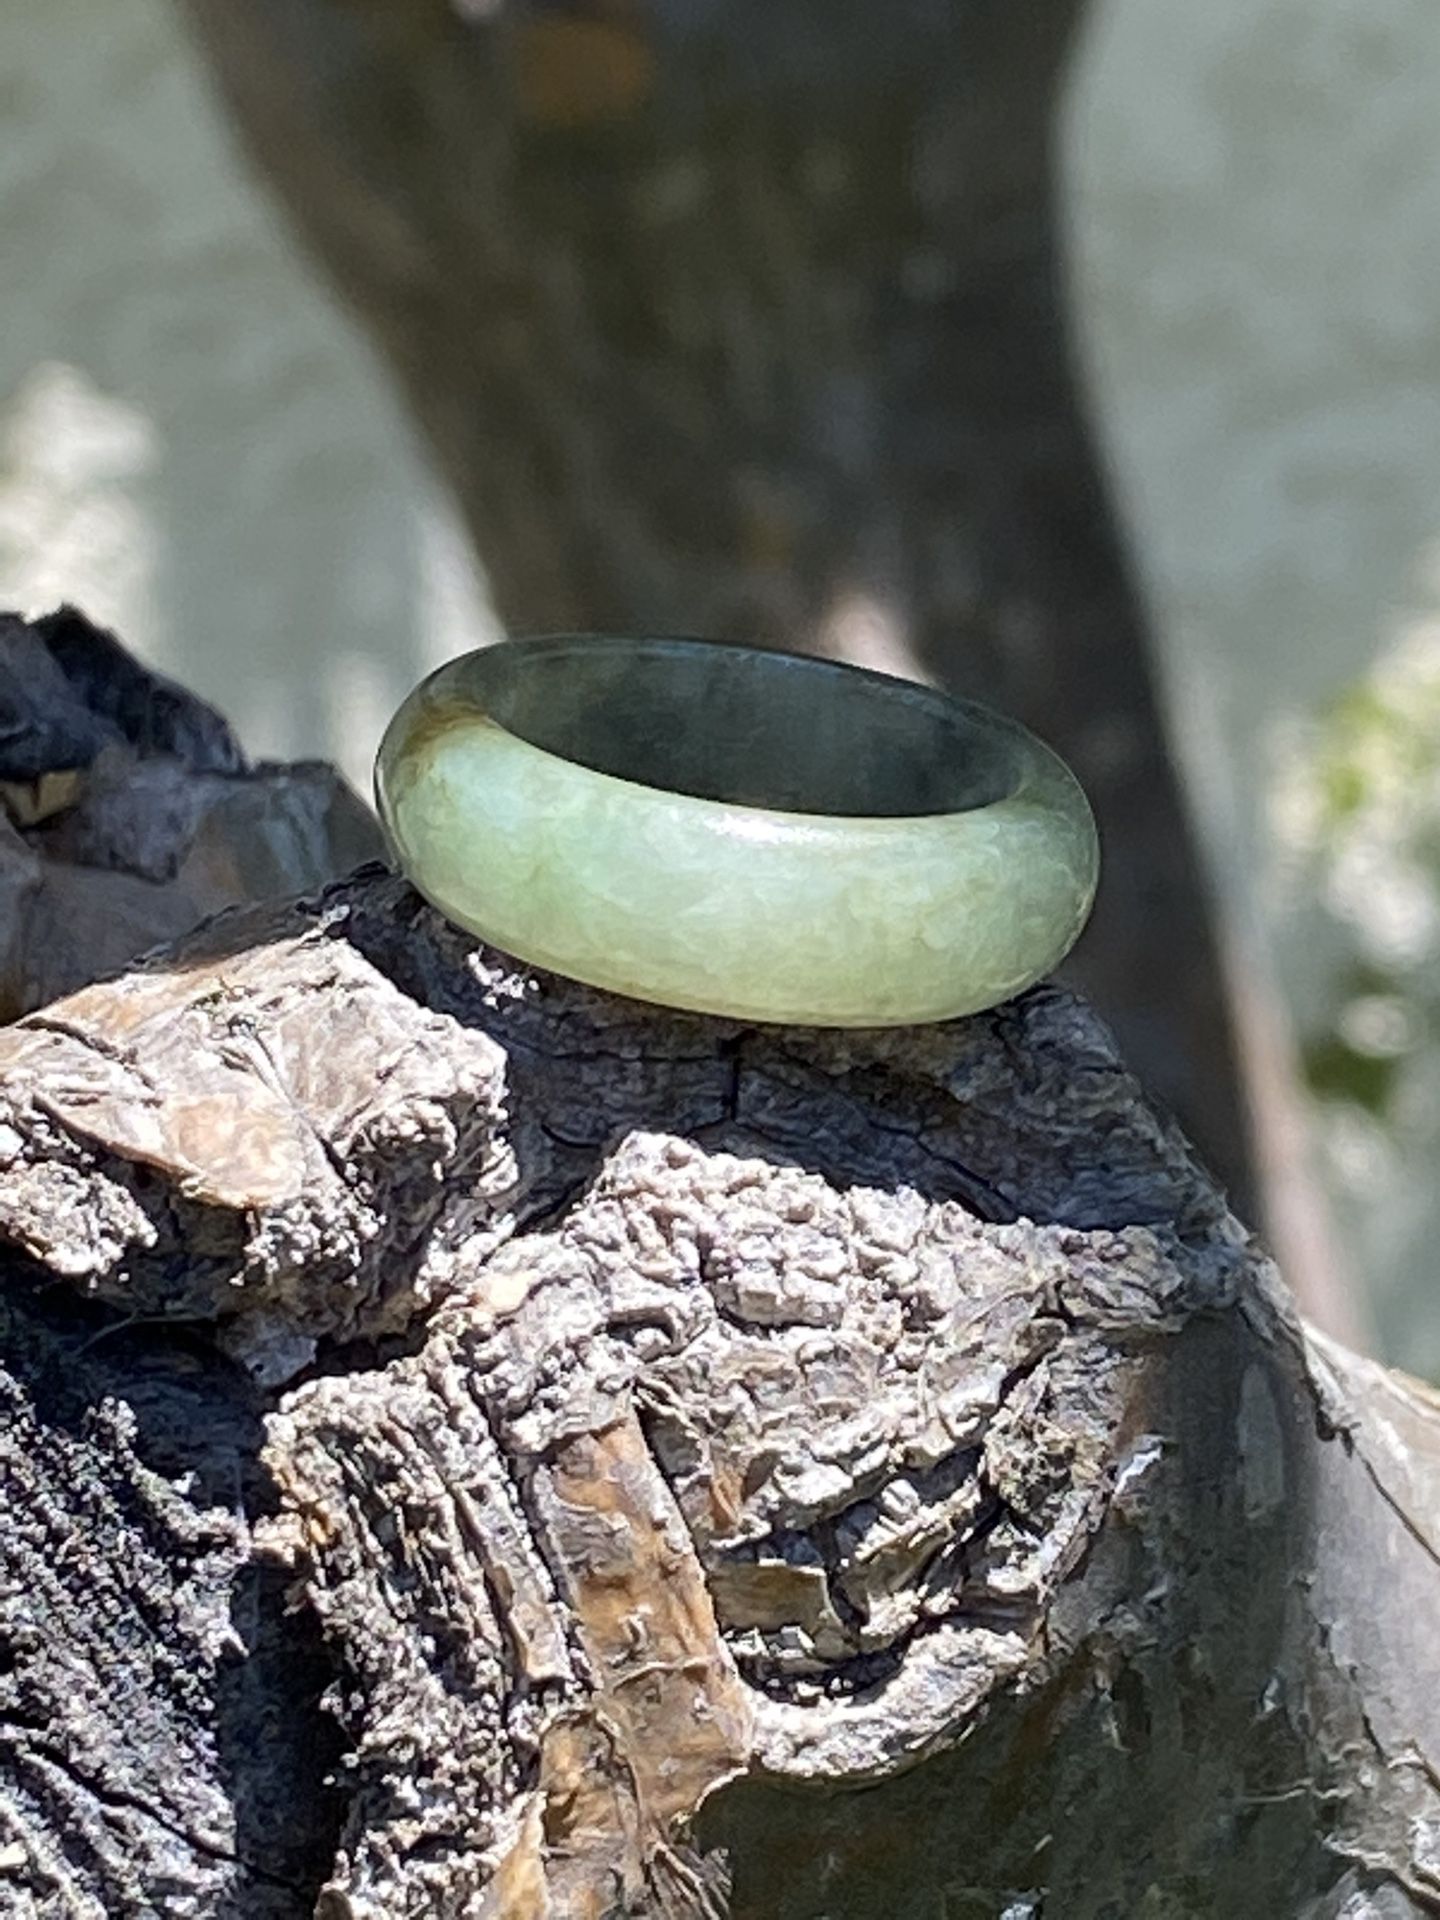 Jade ring